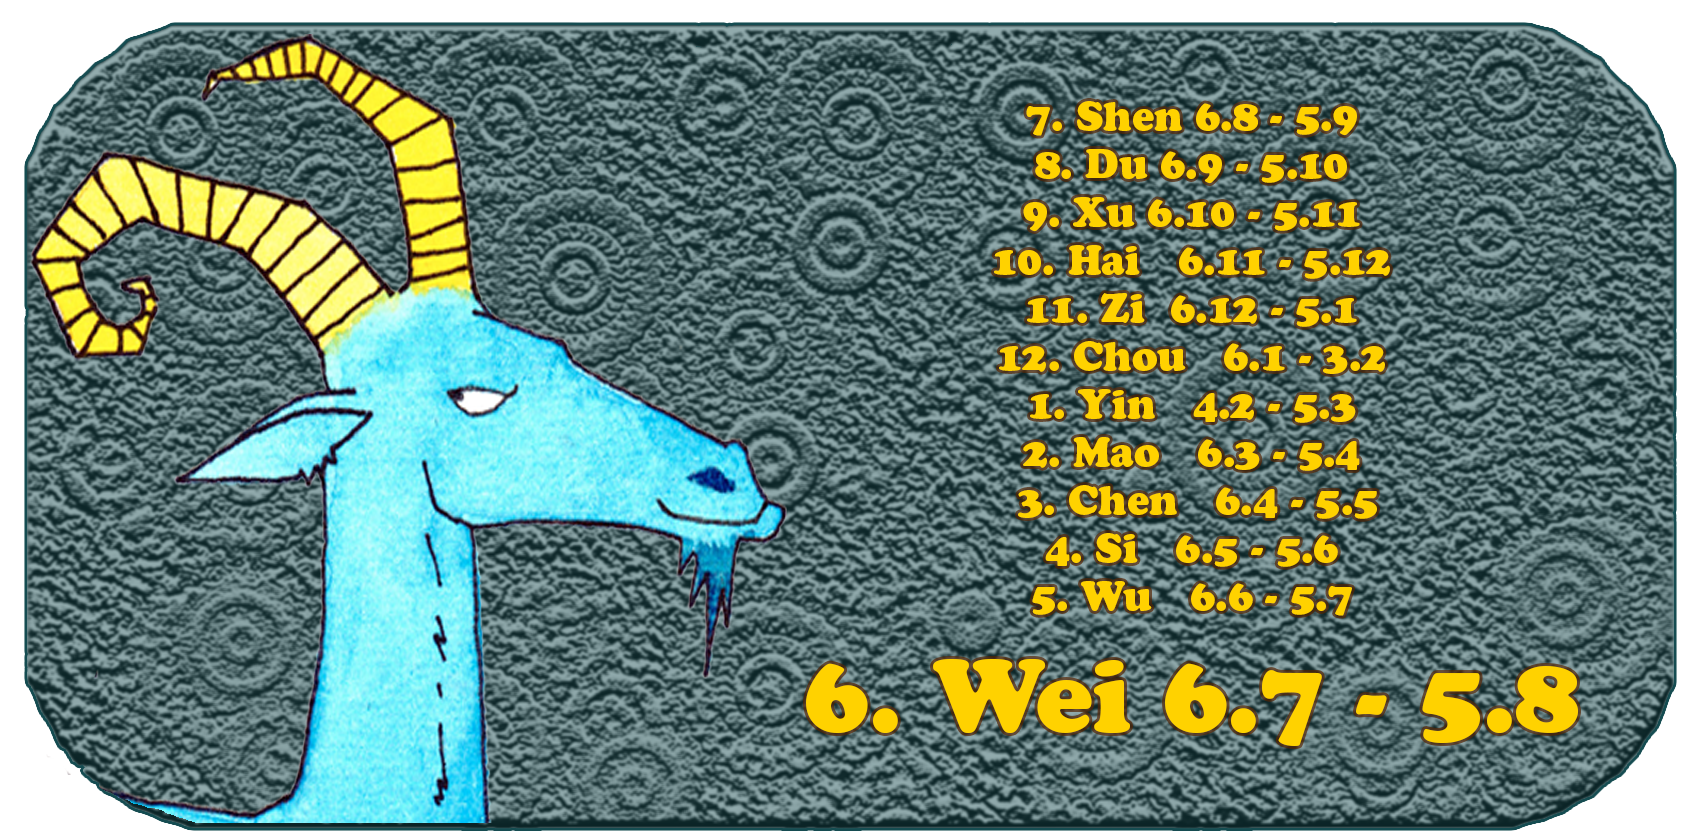 Zodíaco chino | Los doce animales chinos | Cabra, enero, mes 6 Wei